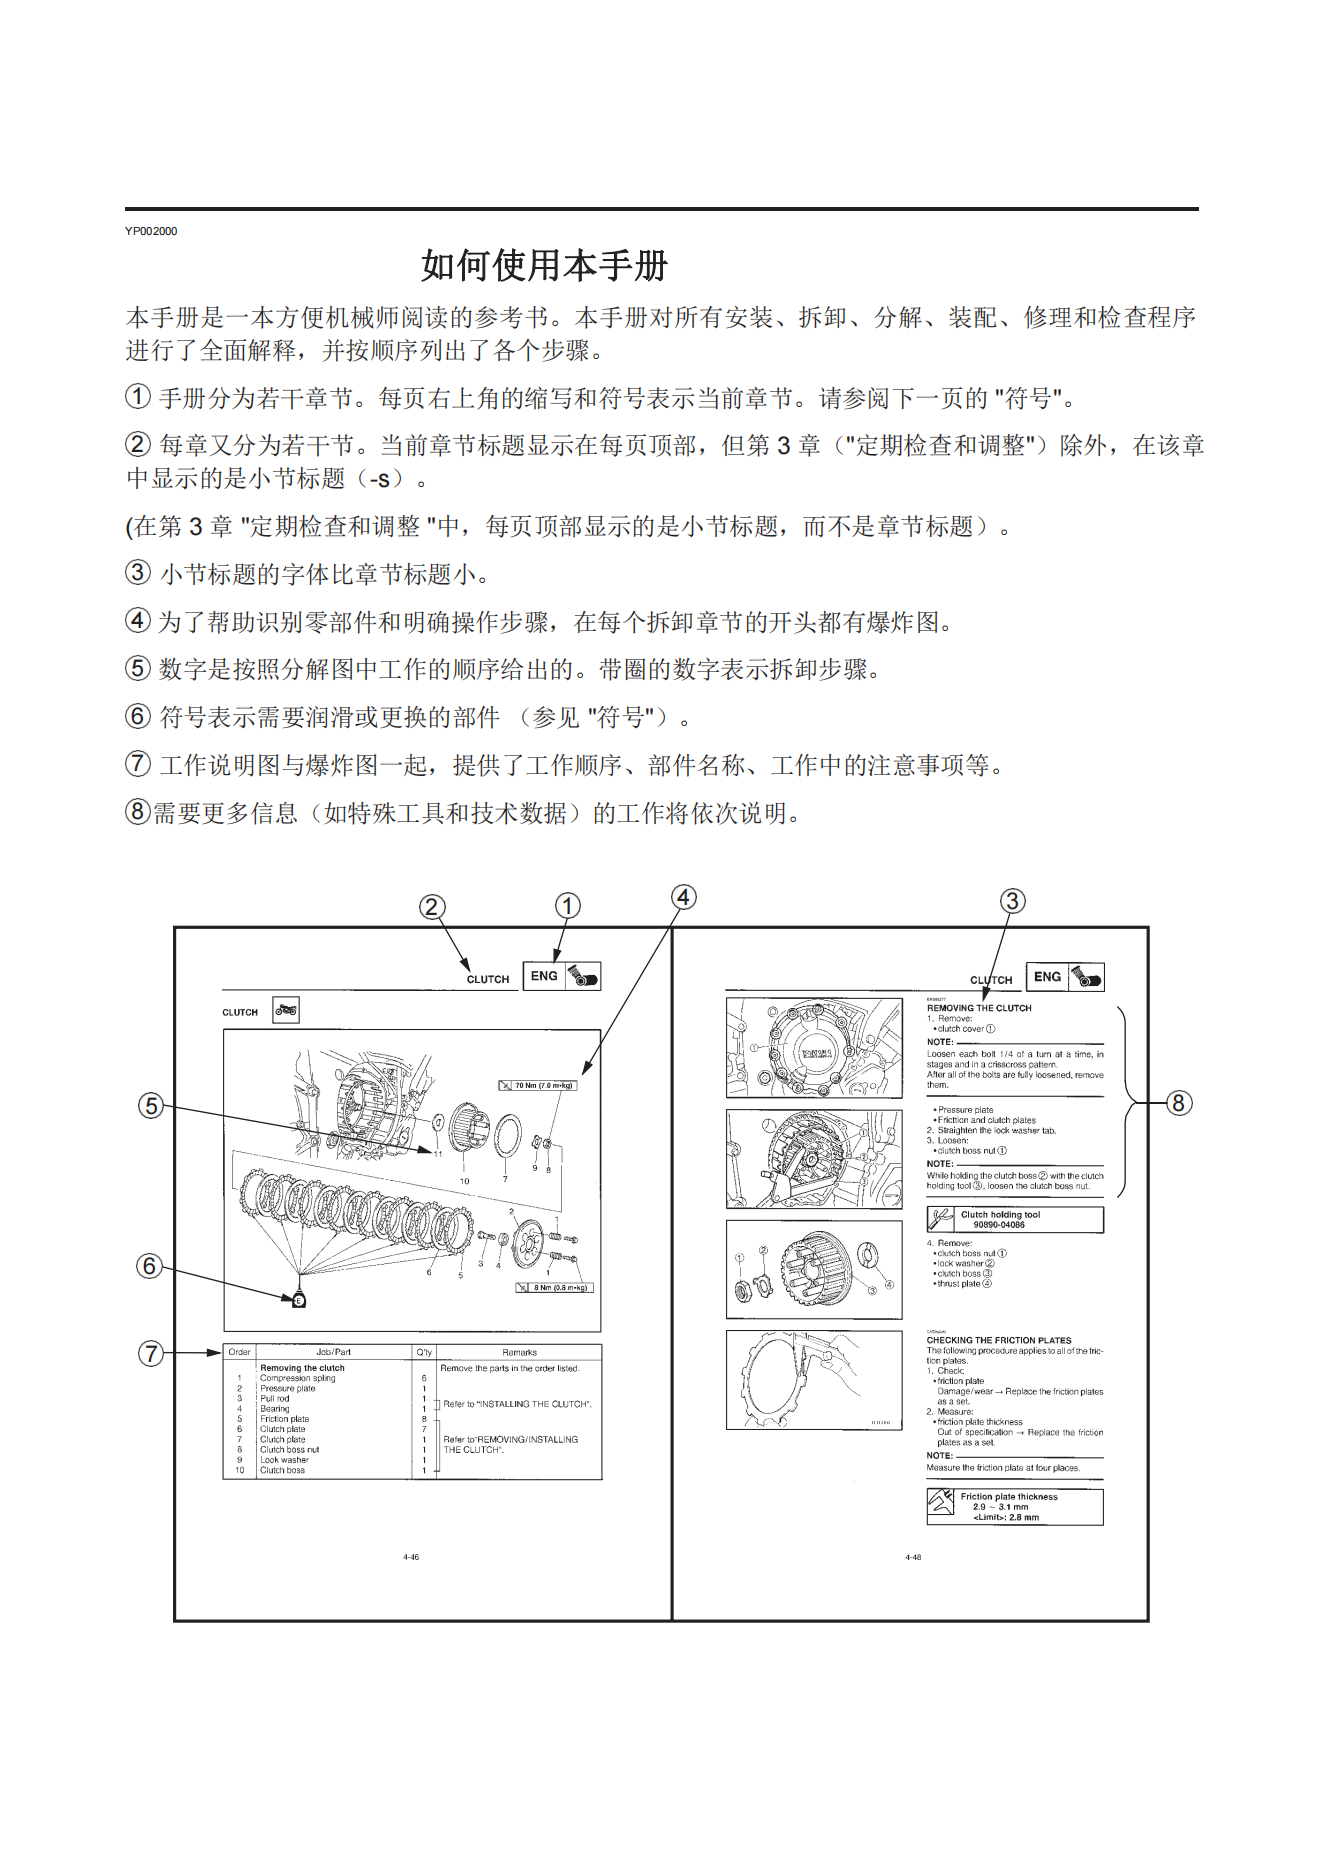 简体中文2001年雅马哈yzfr6雅马哈r6维修补充手册需要和1999-2002年雅马哈r6维修手册一起使用插图1